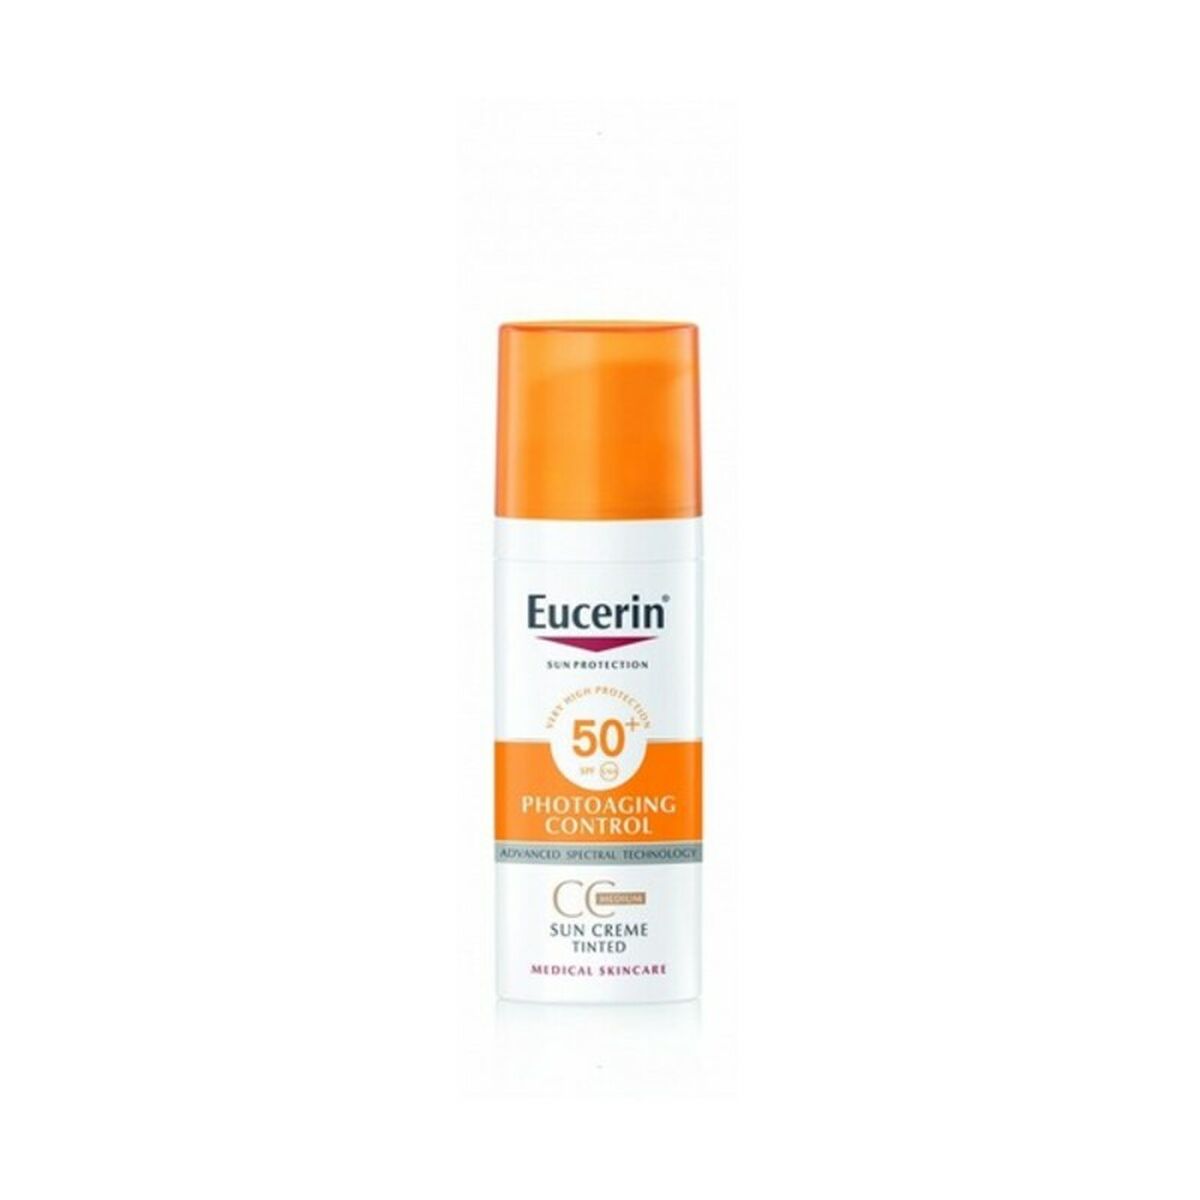 Billede af Facial Sun Cream Photoaging Control Eucerin Spf 50+ (50 ml)